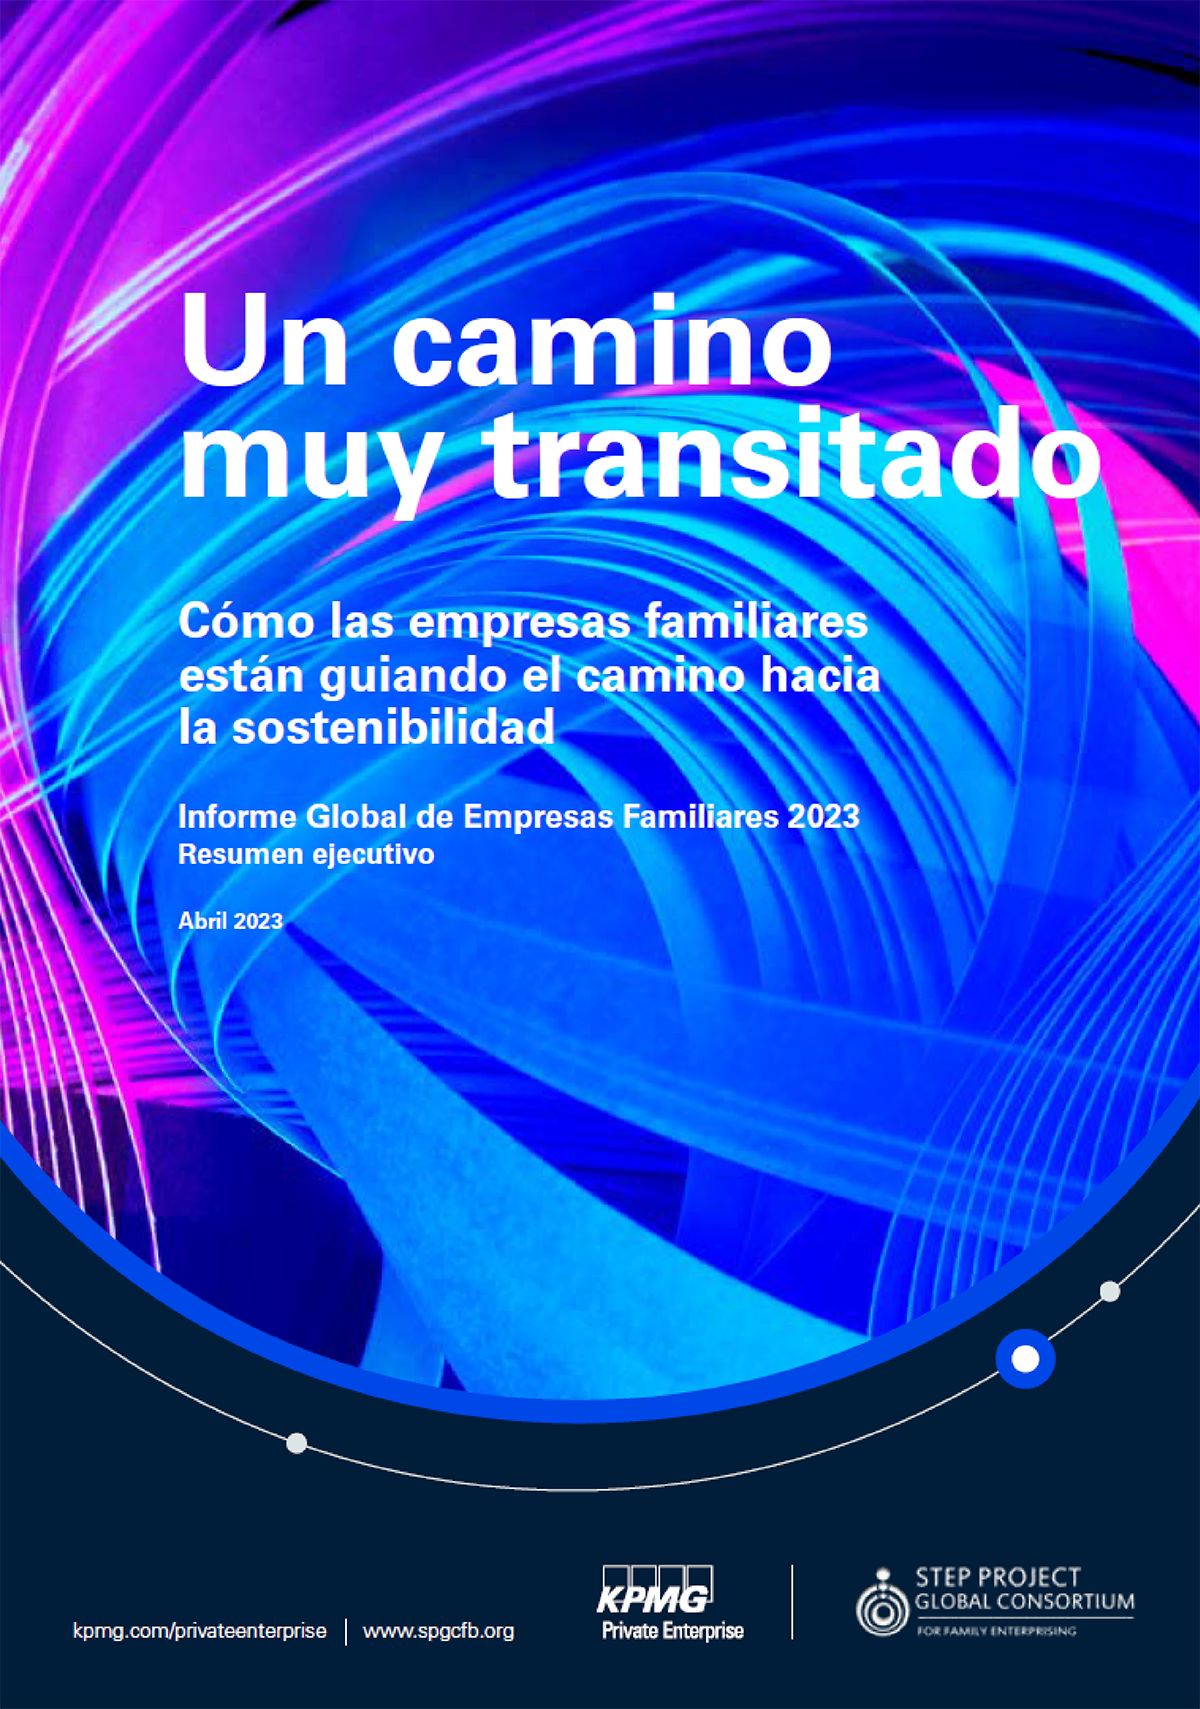  PDF cover